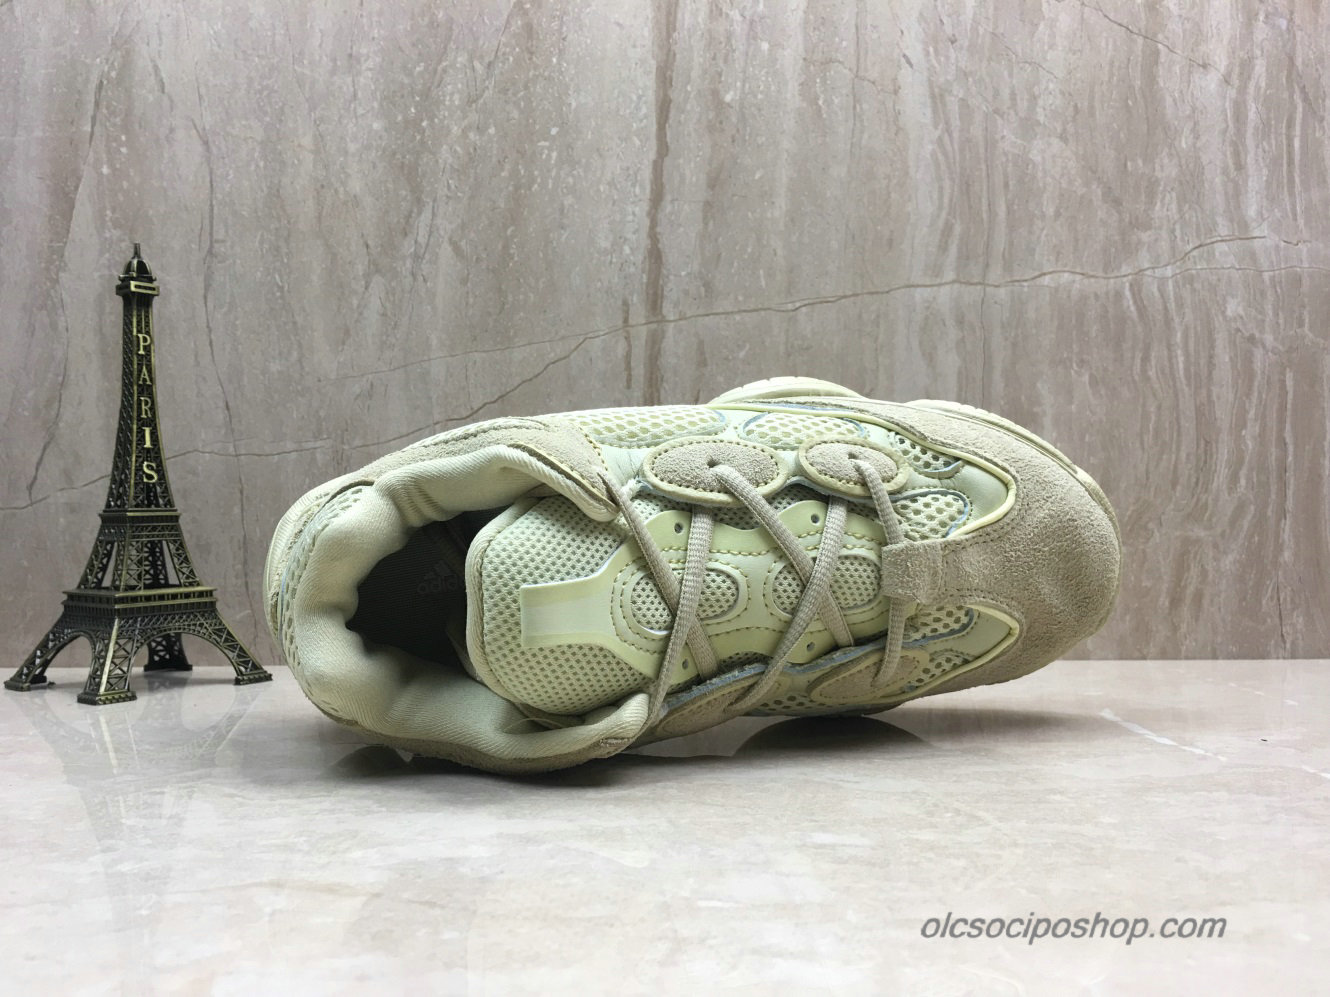 Adidas Yeezy Desert Rat 500 Blush Halványsárga Cipők (DB2966) - Kattintásra bezárul